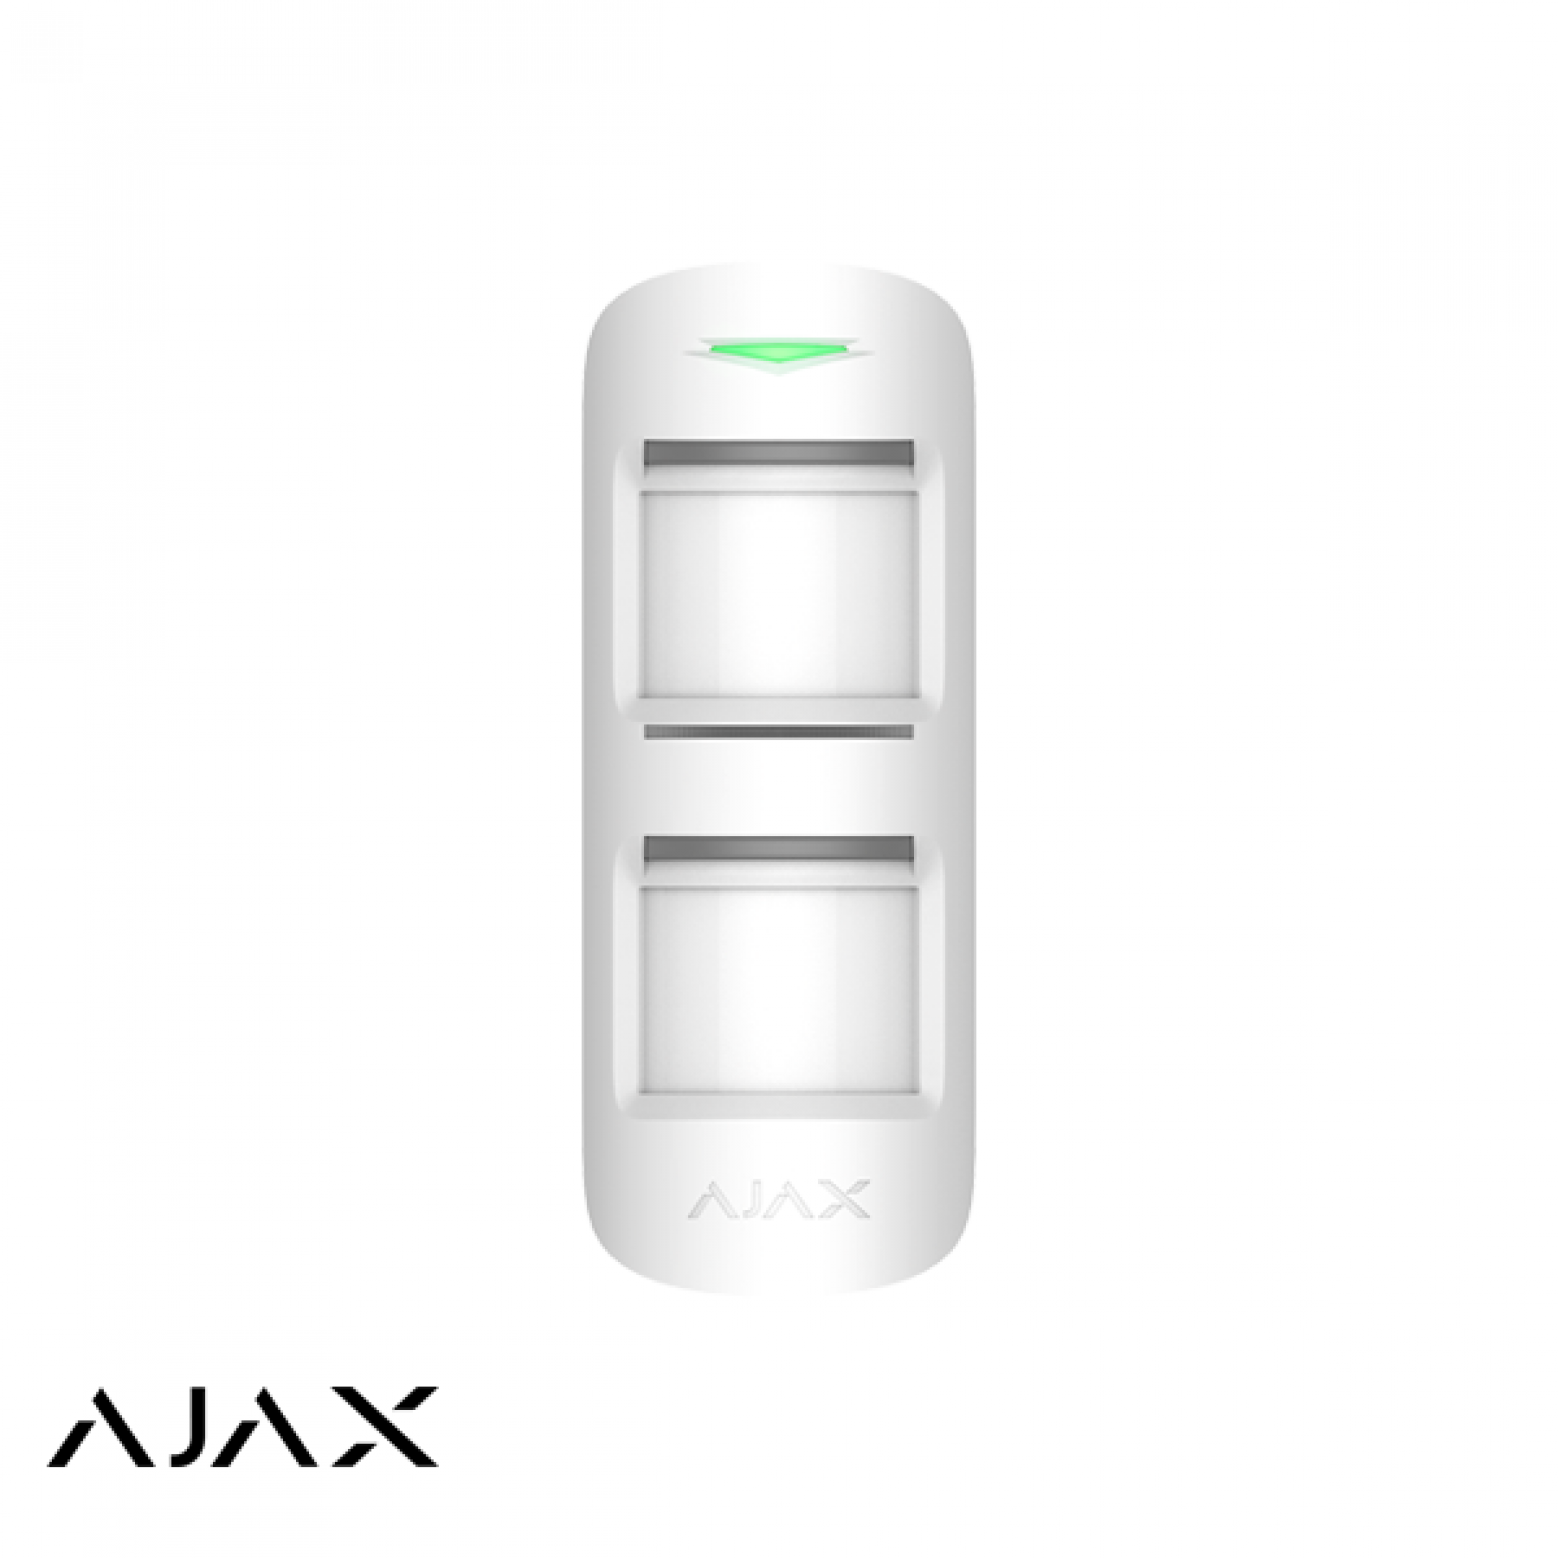 AJAX MotionProtect rilevatore di movimento all'aperto senza fili